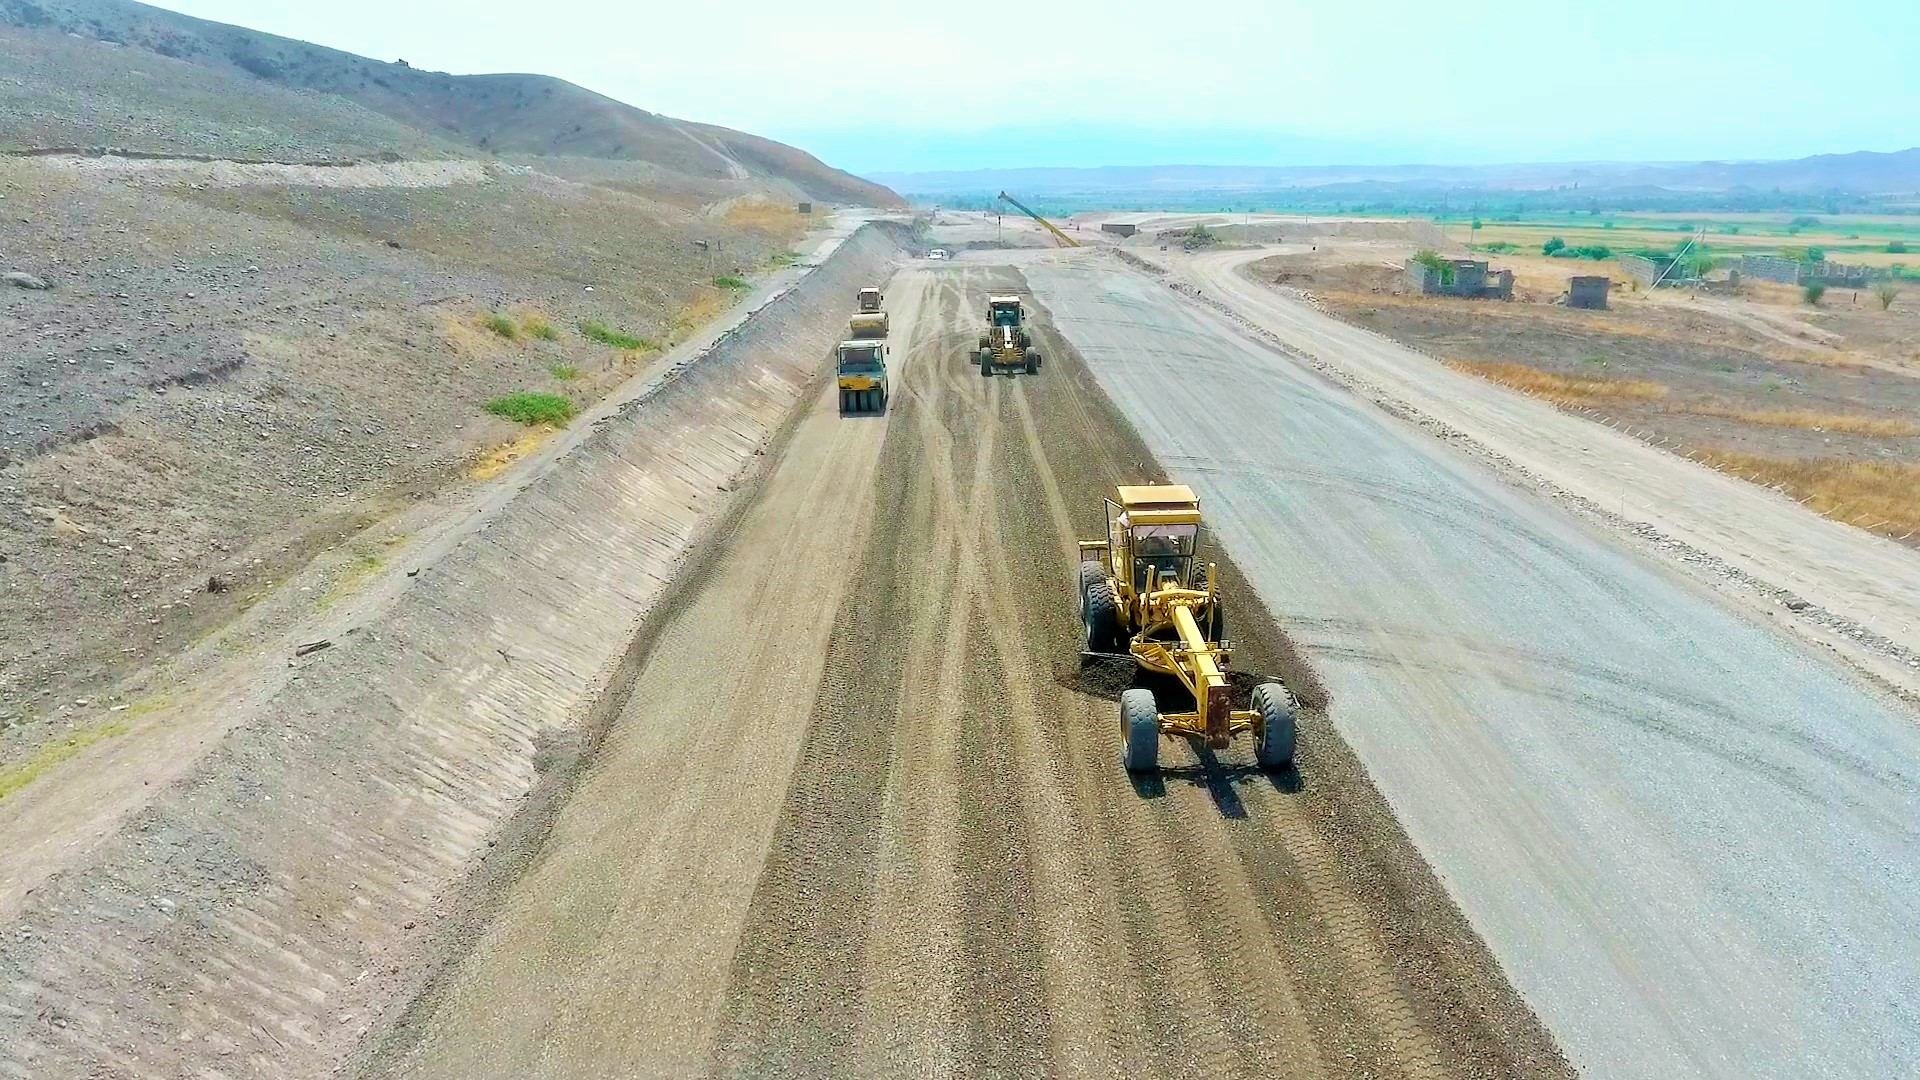 Ускоренными темпами продолжается строительство автодорог Худаферин – Губадлы – Лачин и Ханлыг – Губадлы